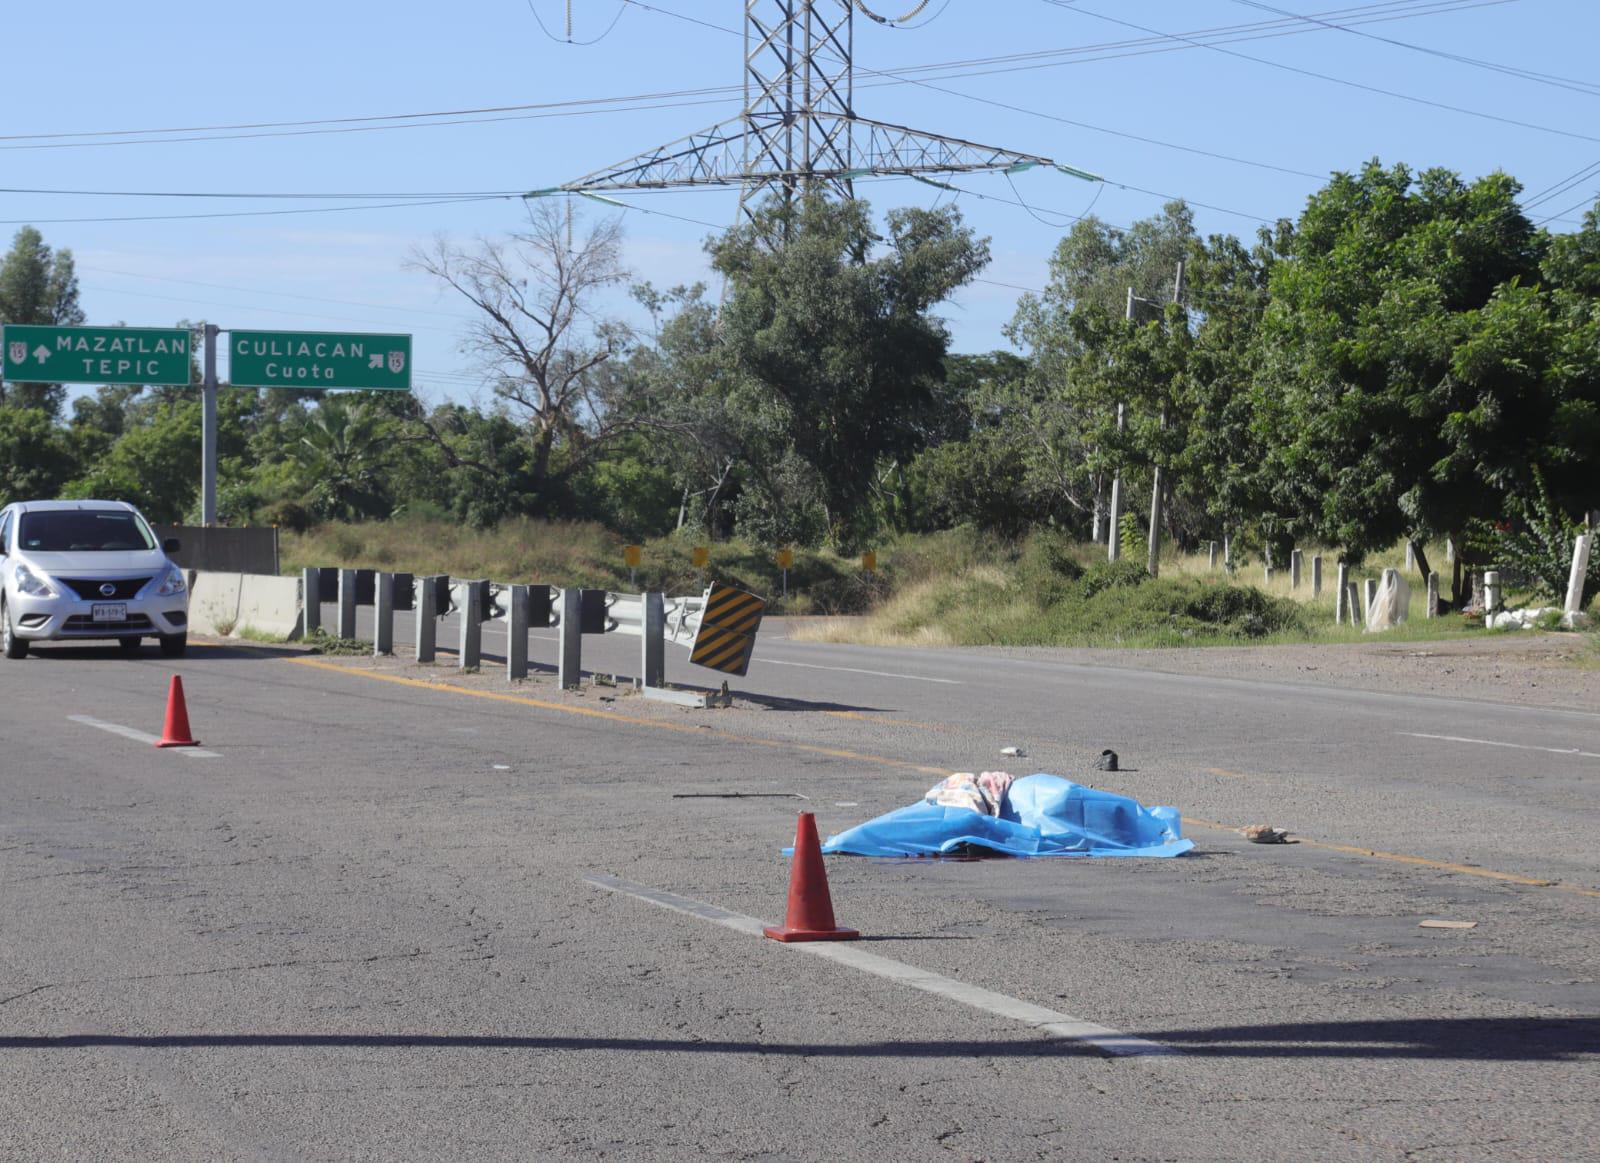 $!Hombre en condición de calle muere arrollado por auto fantasma en Mazatlán